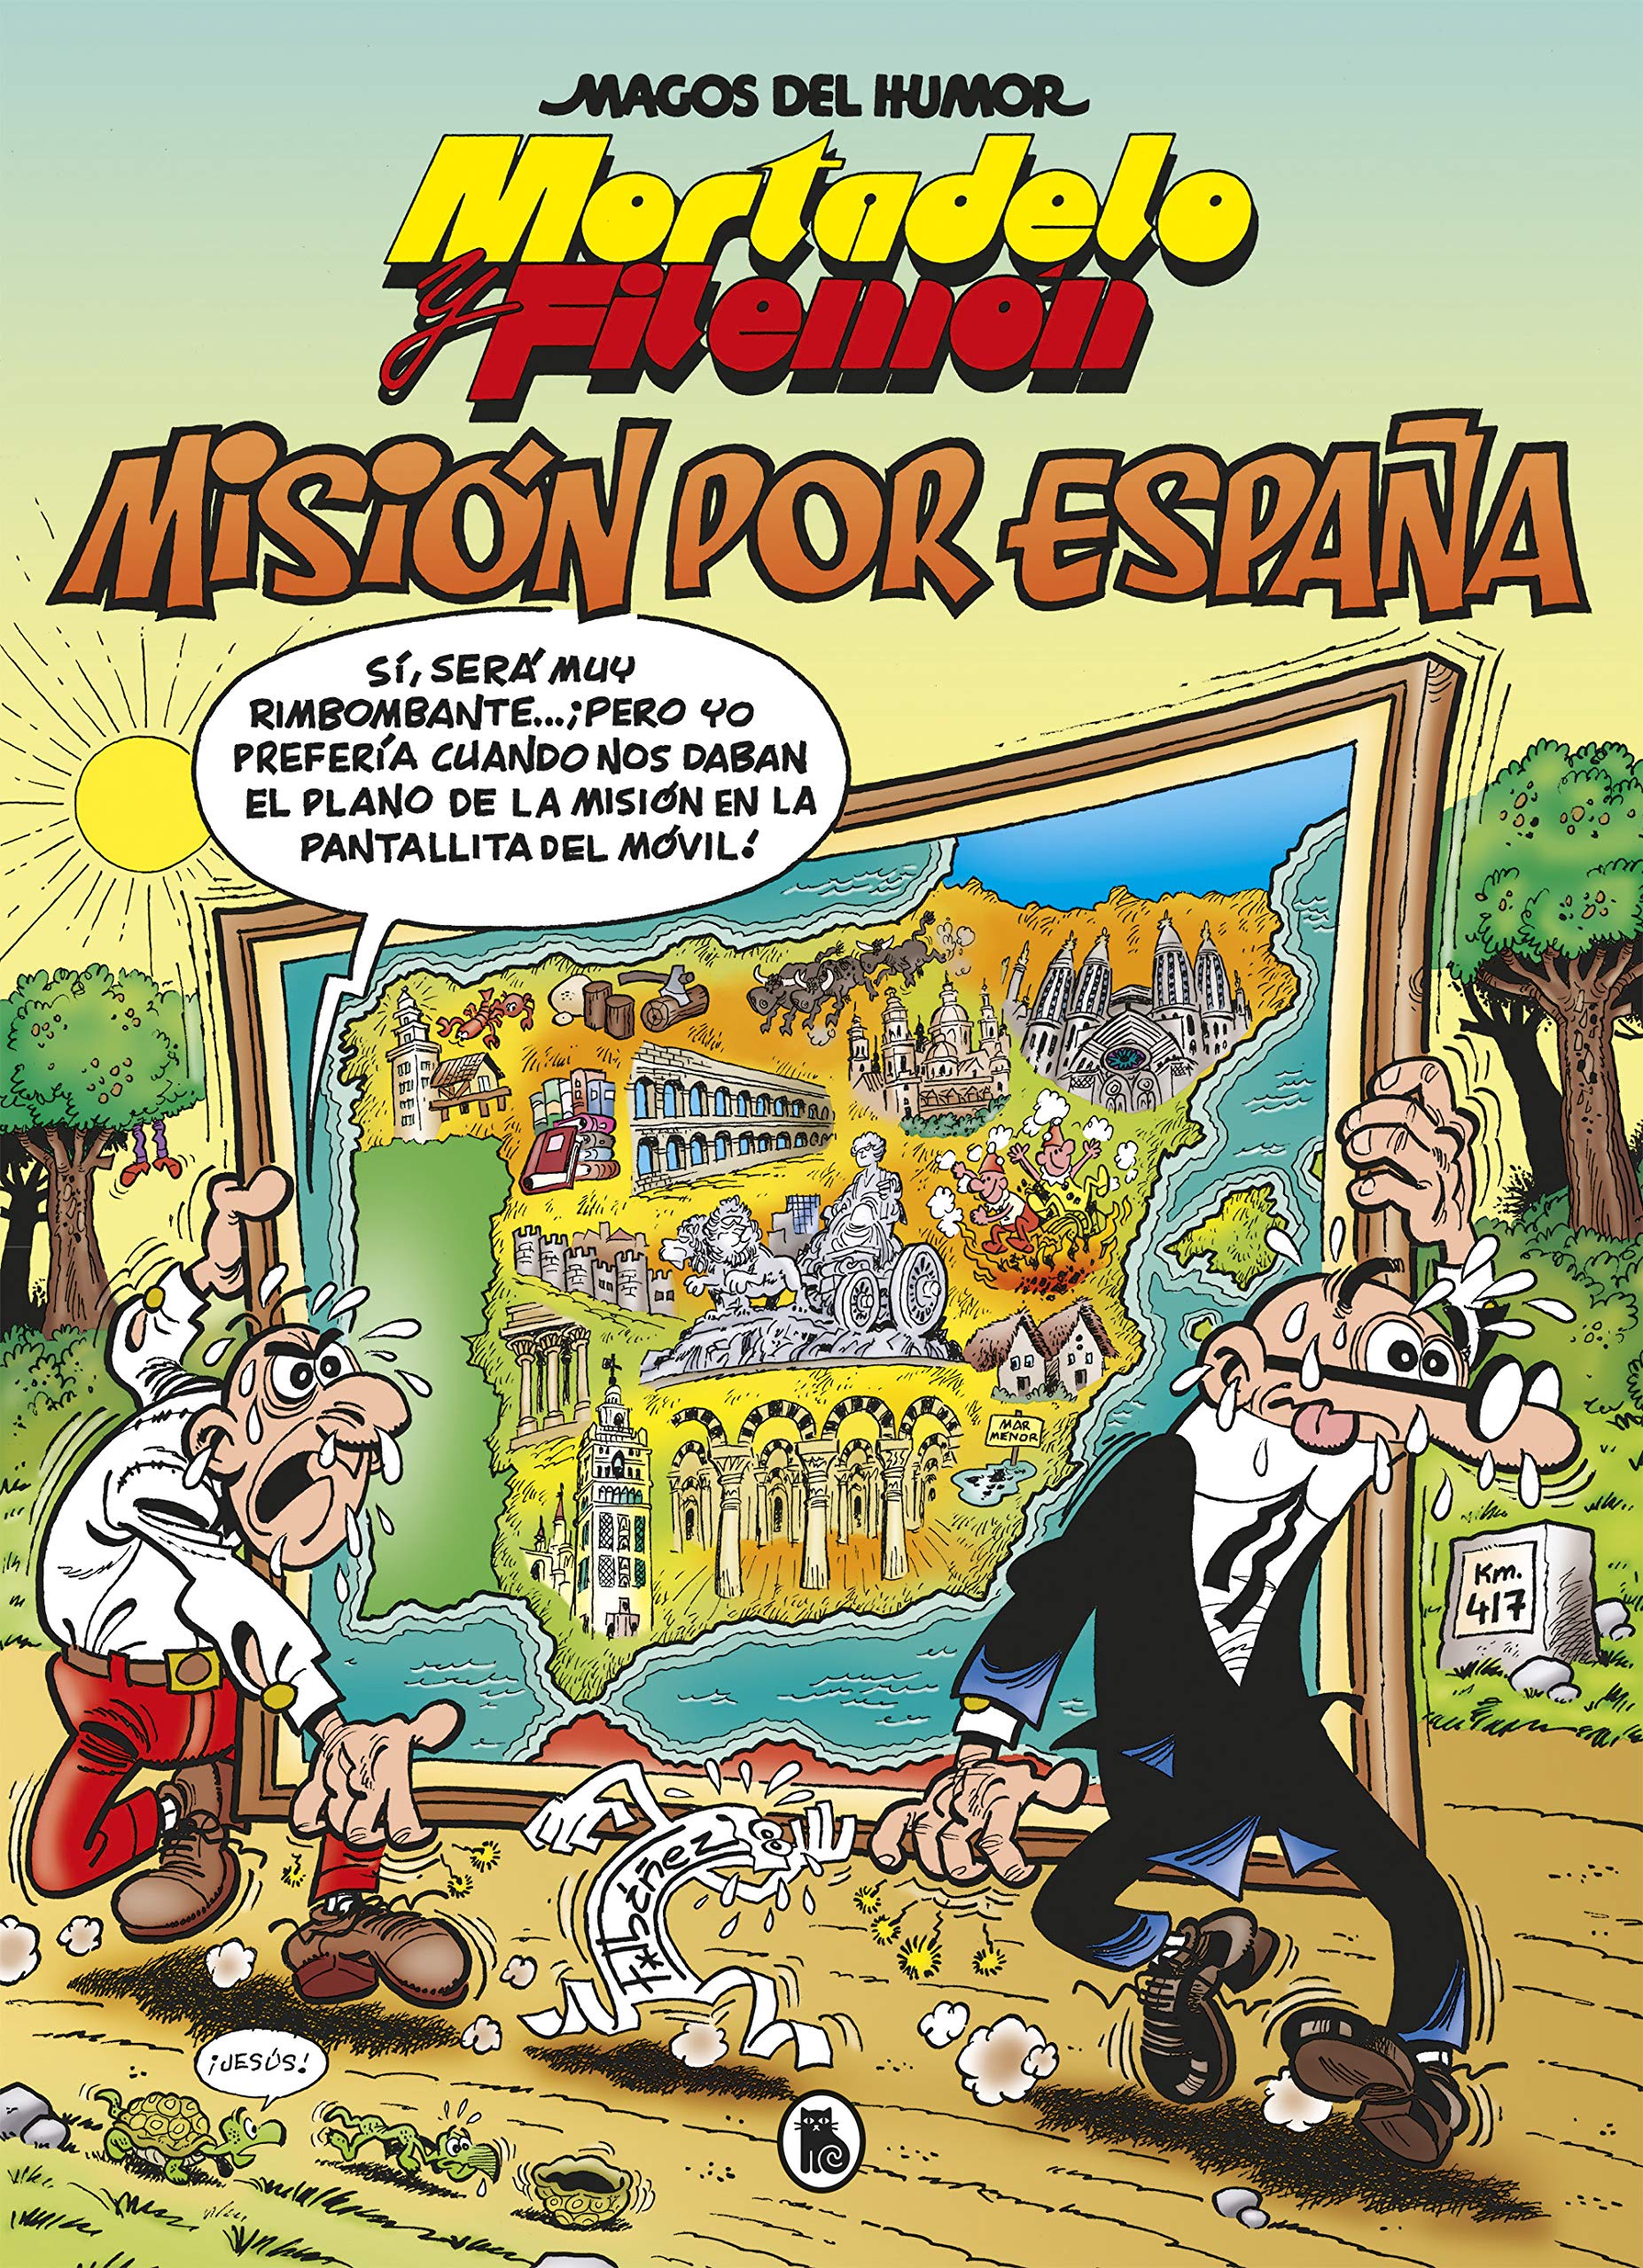 Misión por España, la nueva aventura de Mortadelo y Filemón